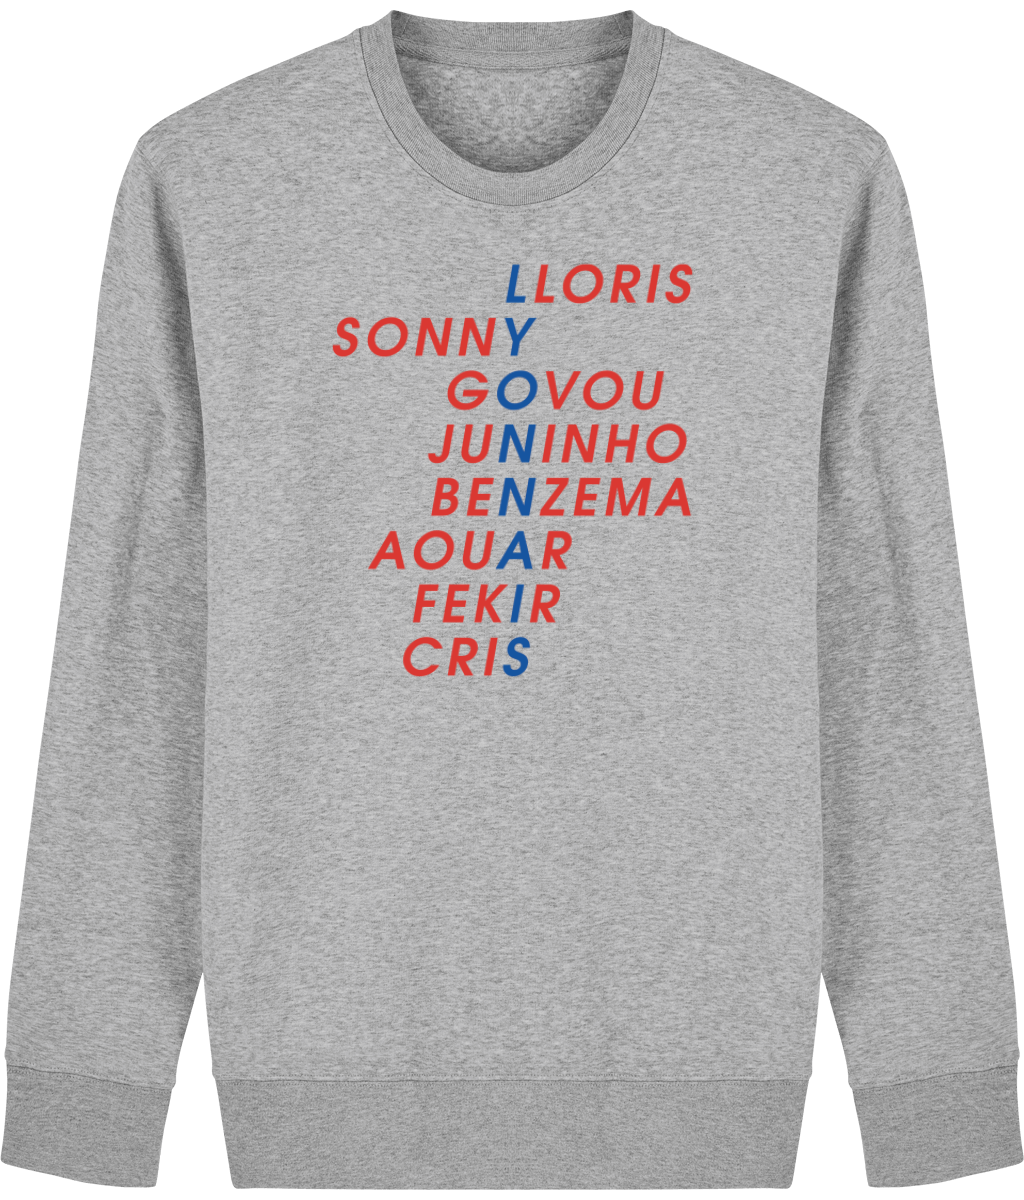 Lyon Legends sweatshirt